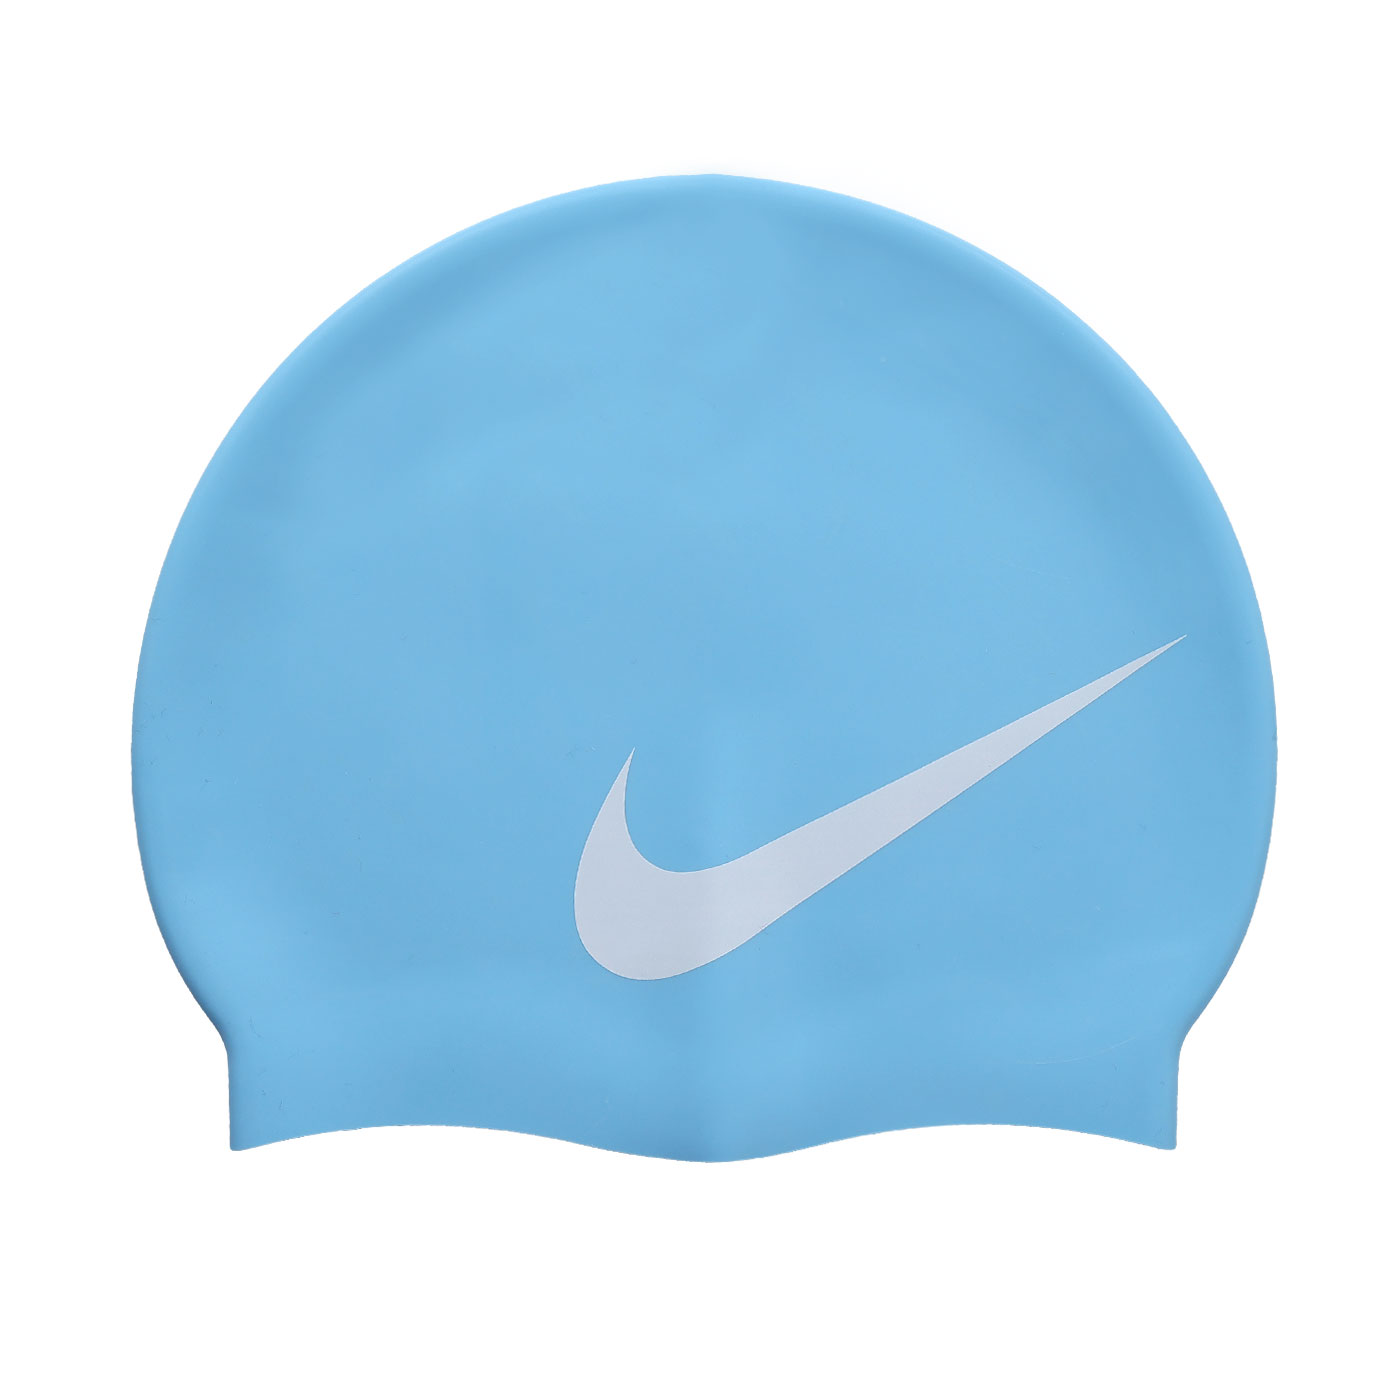 NIKE SWIM BIG SWOOSH成人矽膠泳帽  NESS8163-486 - 水藍白